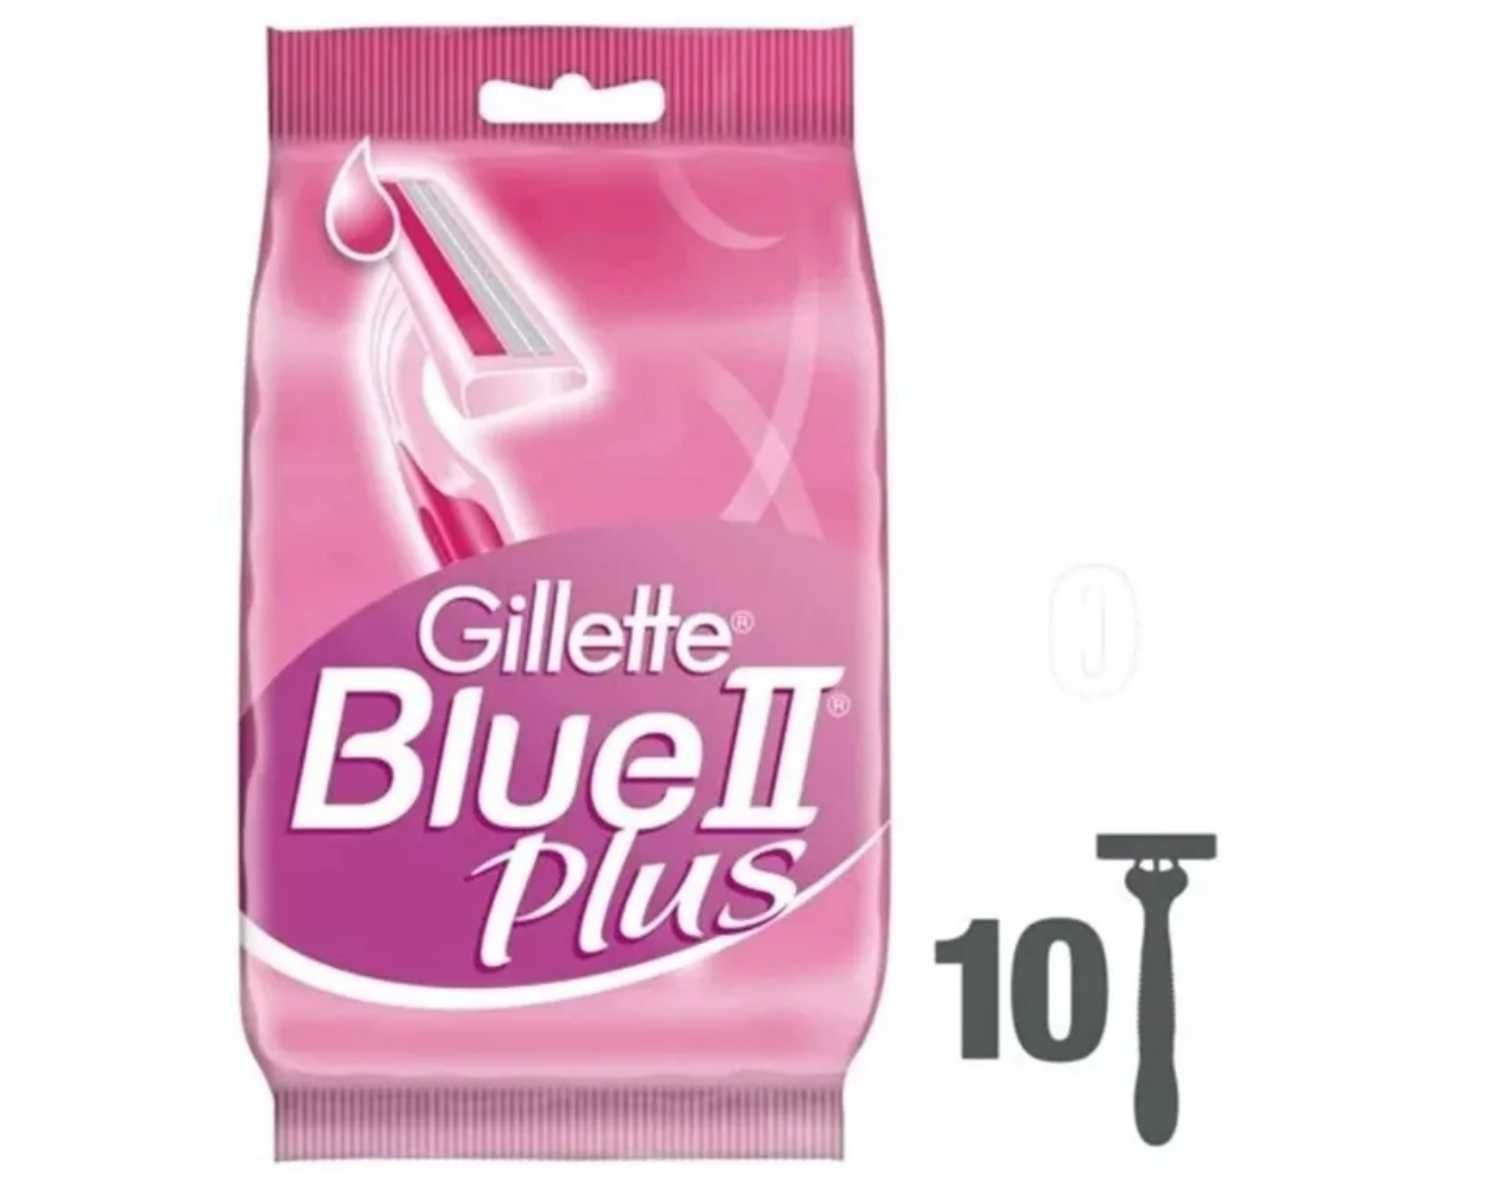 10 maszynek do golenia Gillette Blue 2 Plus + 10 Gillette Blue II Plus